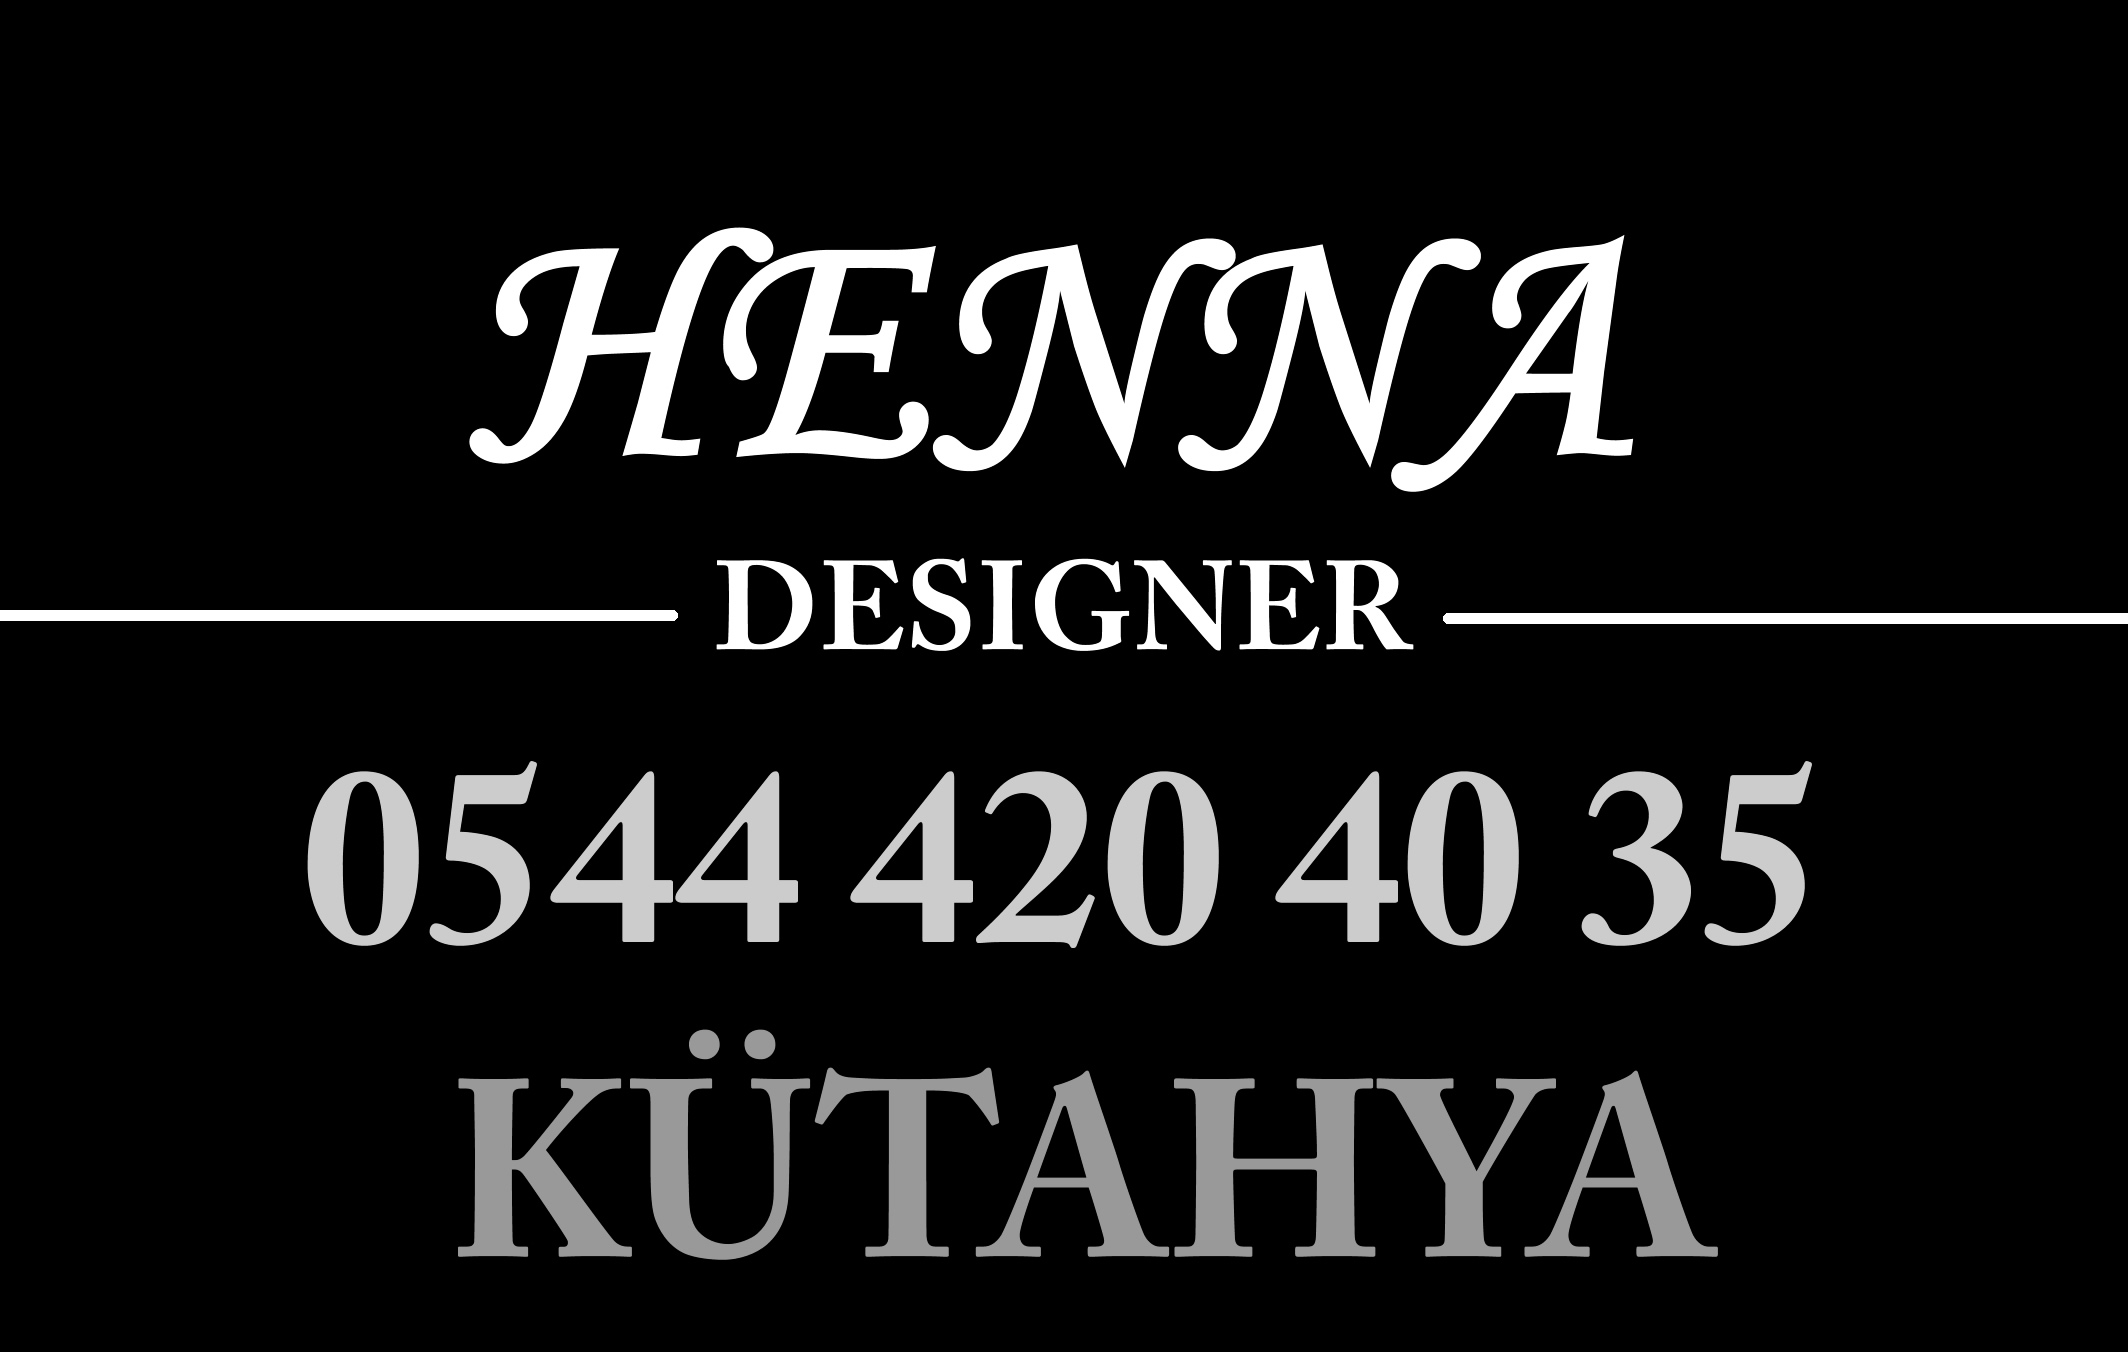 Henna Designer